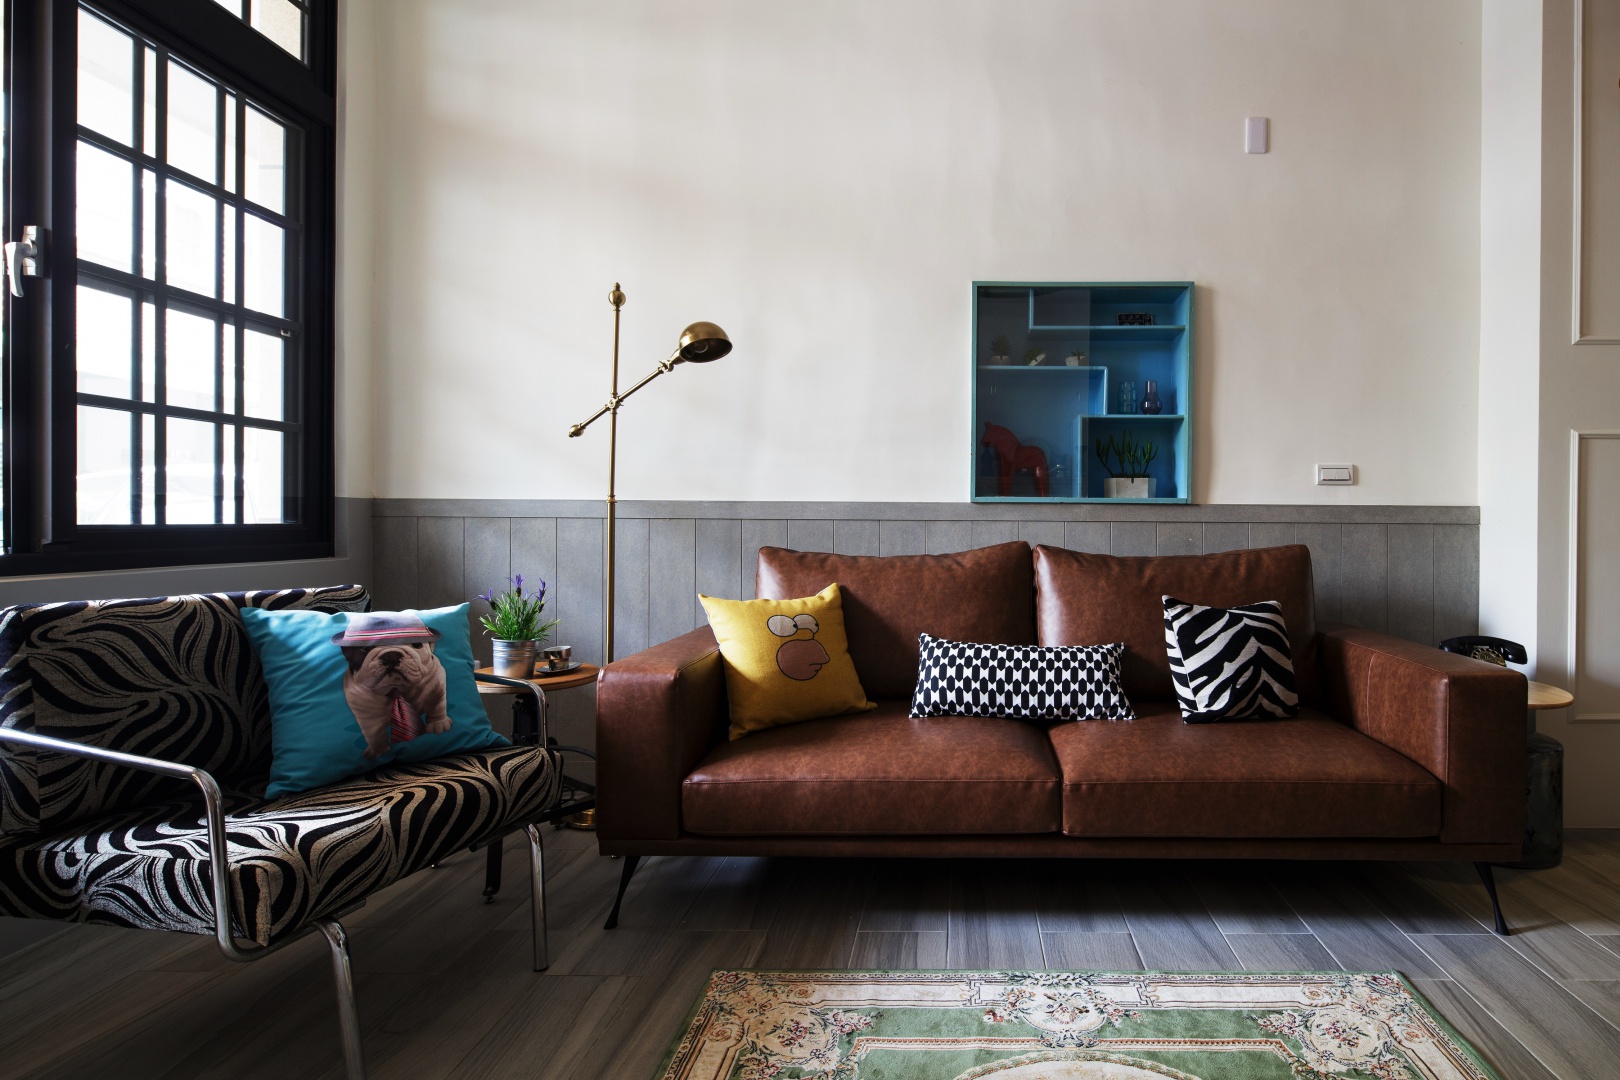 Tapicerowana, skórzana kanapa pięknie harmonizuje z drewnem na podłodze i ścianie. Naturalną kolorystykę przełamano ciemnym błękitem w postaci poduszki dekoracyjnej i niewielkiej, asymetrycznej szafki wiszącej na ścianie. Projekt: HAO Design Studio. Fot. Joey Liu.